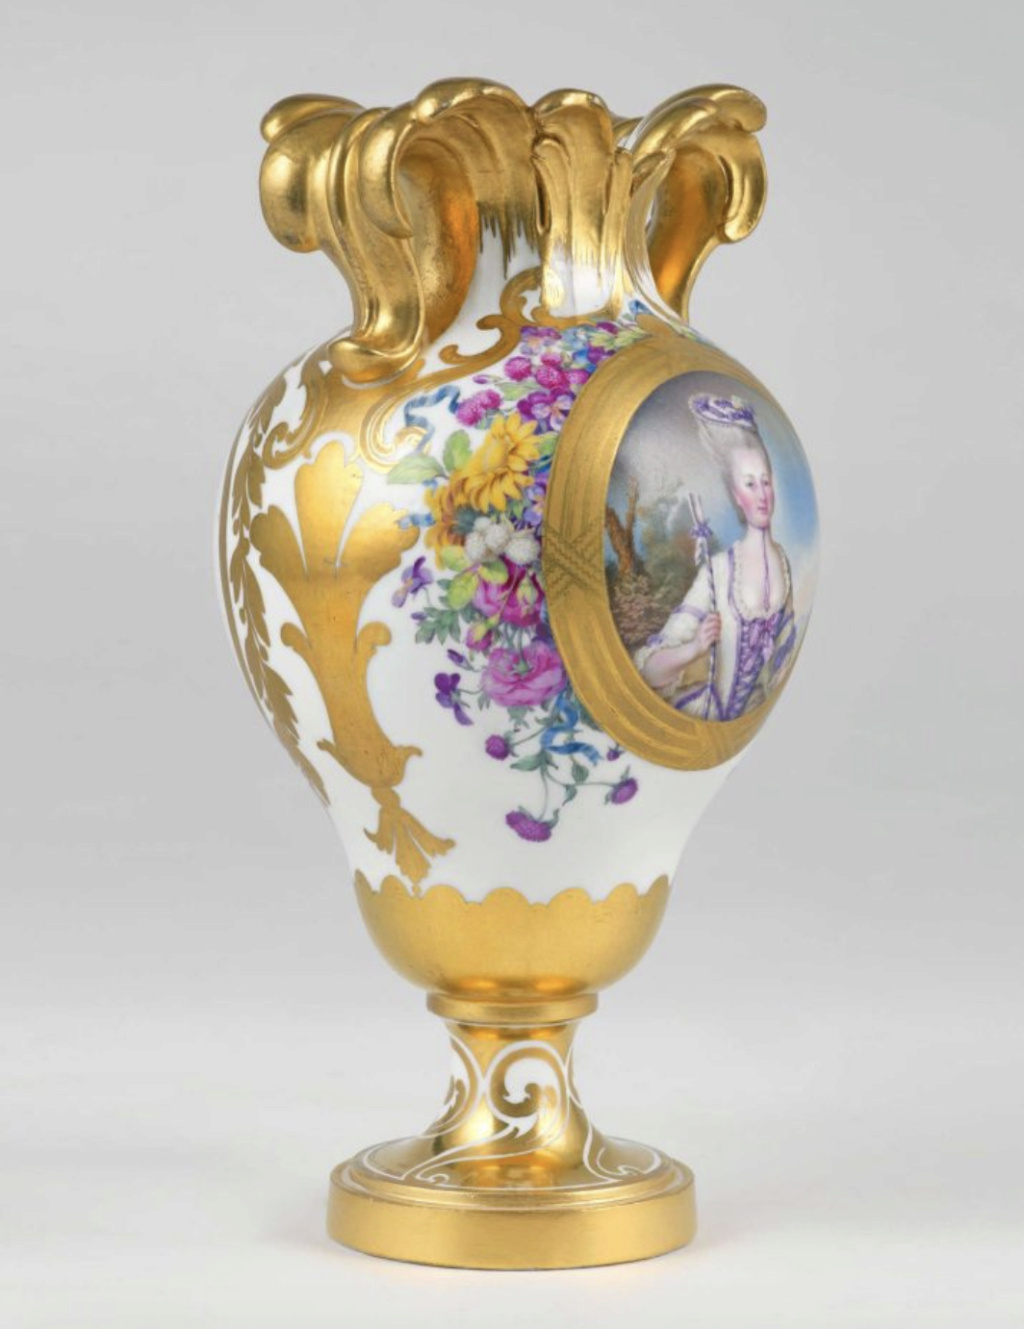 Le premier vase en porcelaine de Sèvres acheté par Marie-Antoinette en 1774 Capt3351